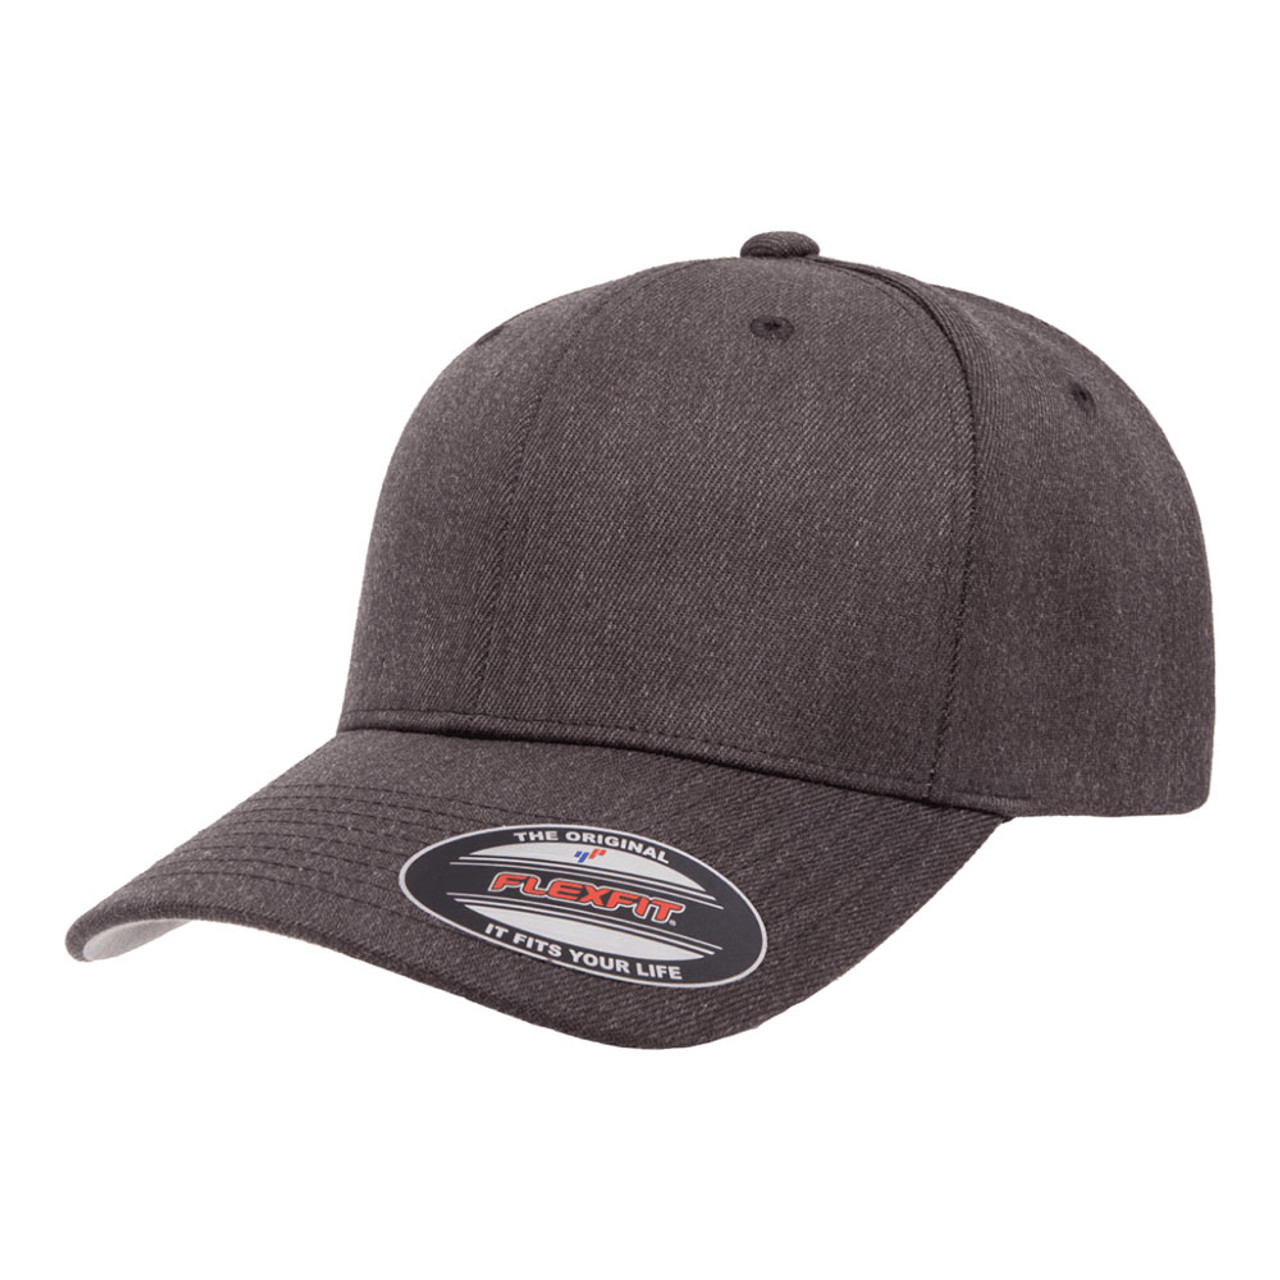 Flexfit Premium Wool Blend Cap The Jac - One Hat Dozen 